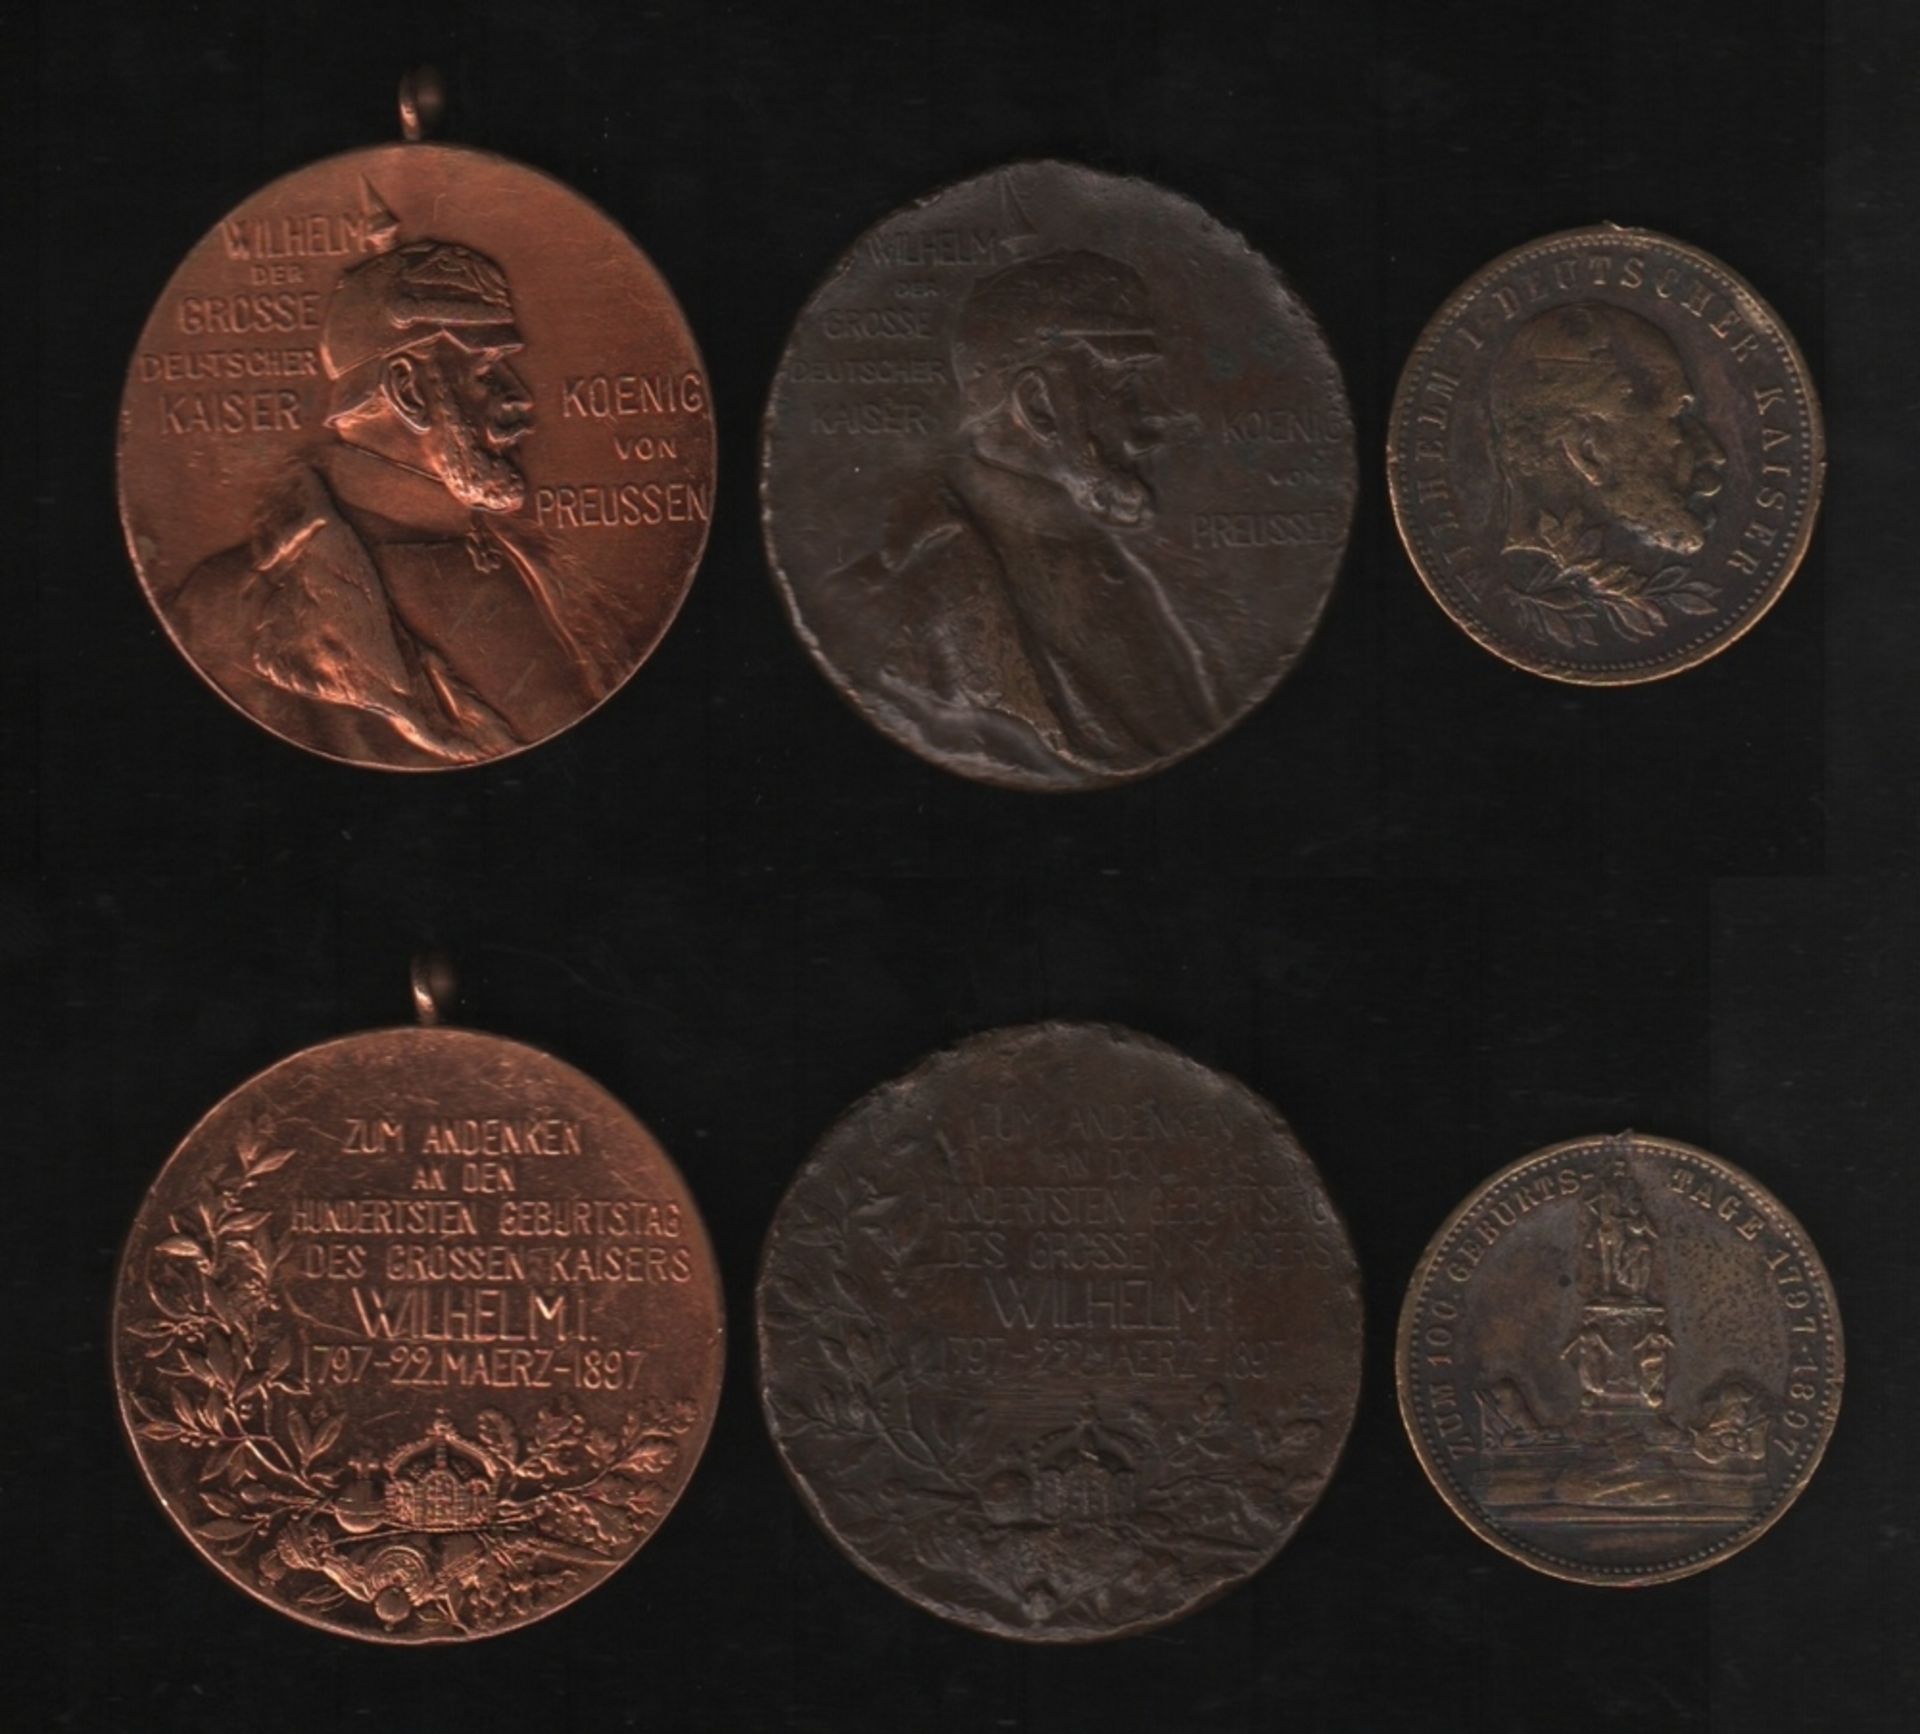 Deutschland. Bronze. Wilhelm I. 3 Medaillen aus verschiedenen Metallen (u. a. Bronze) zur Erinnerung